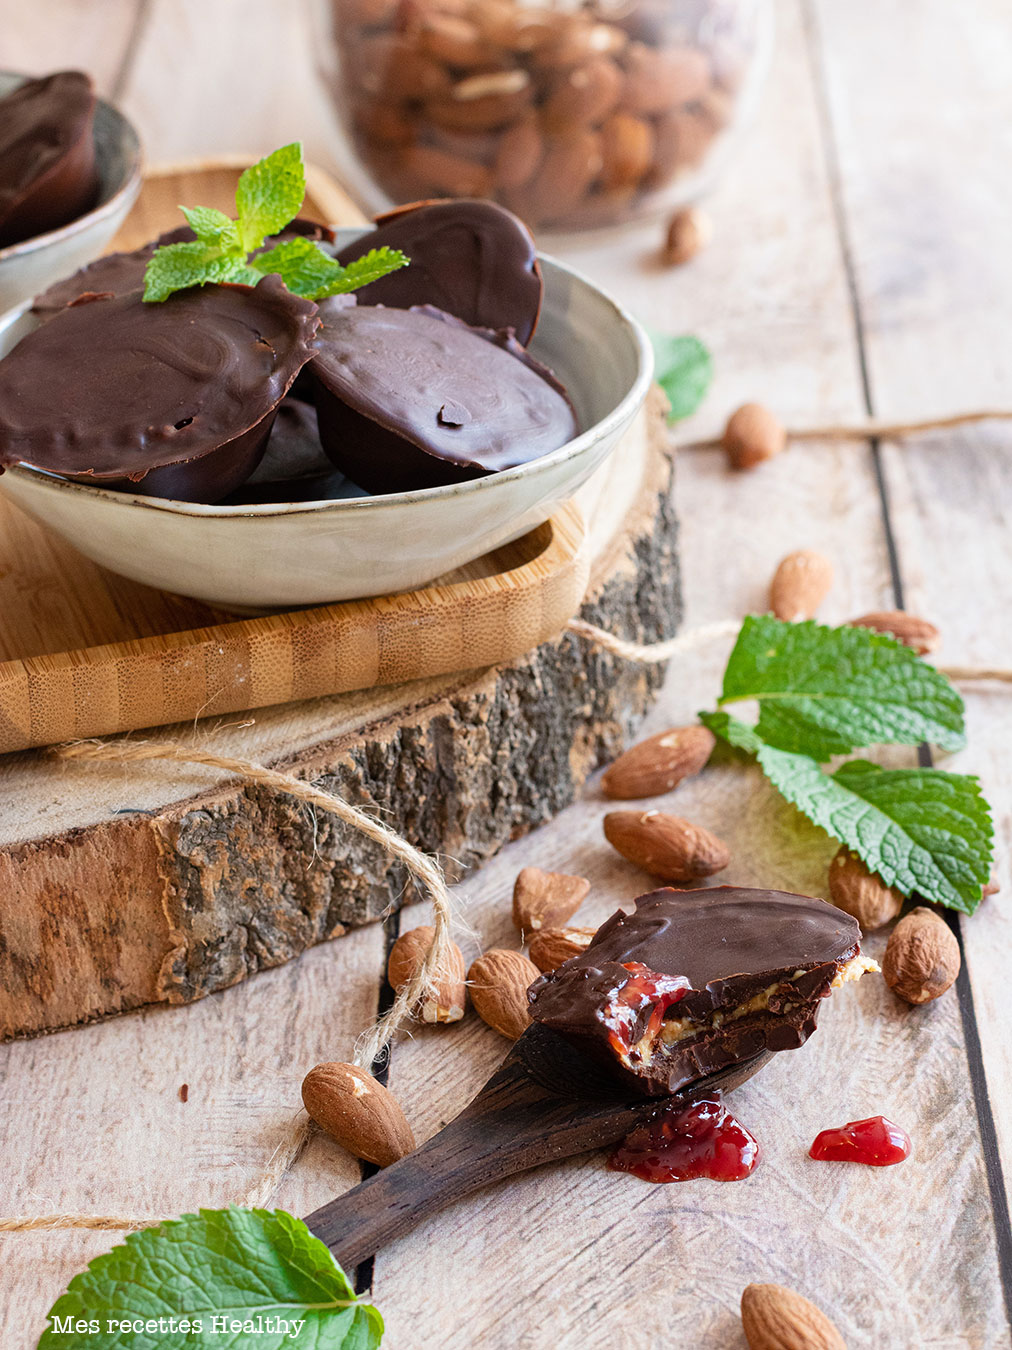 recette healthy-chocolat fourre-confiture framboise-beurre de cacahuète